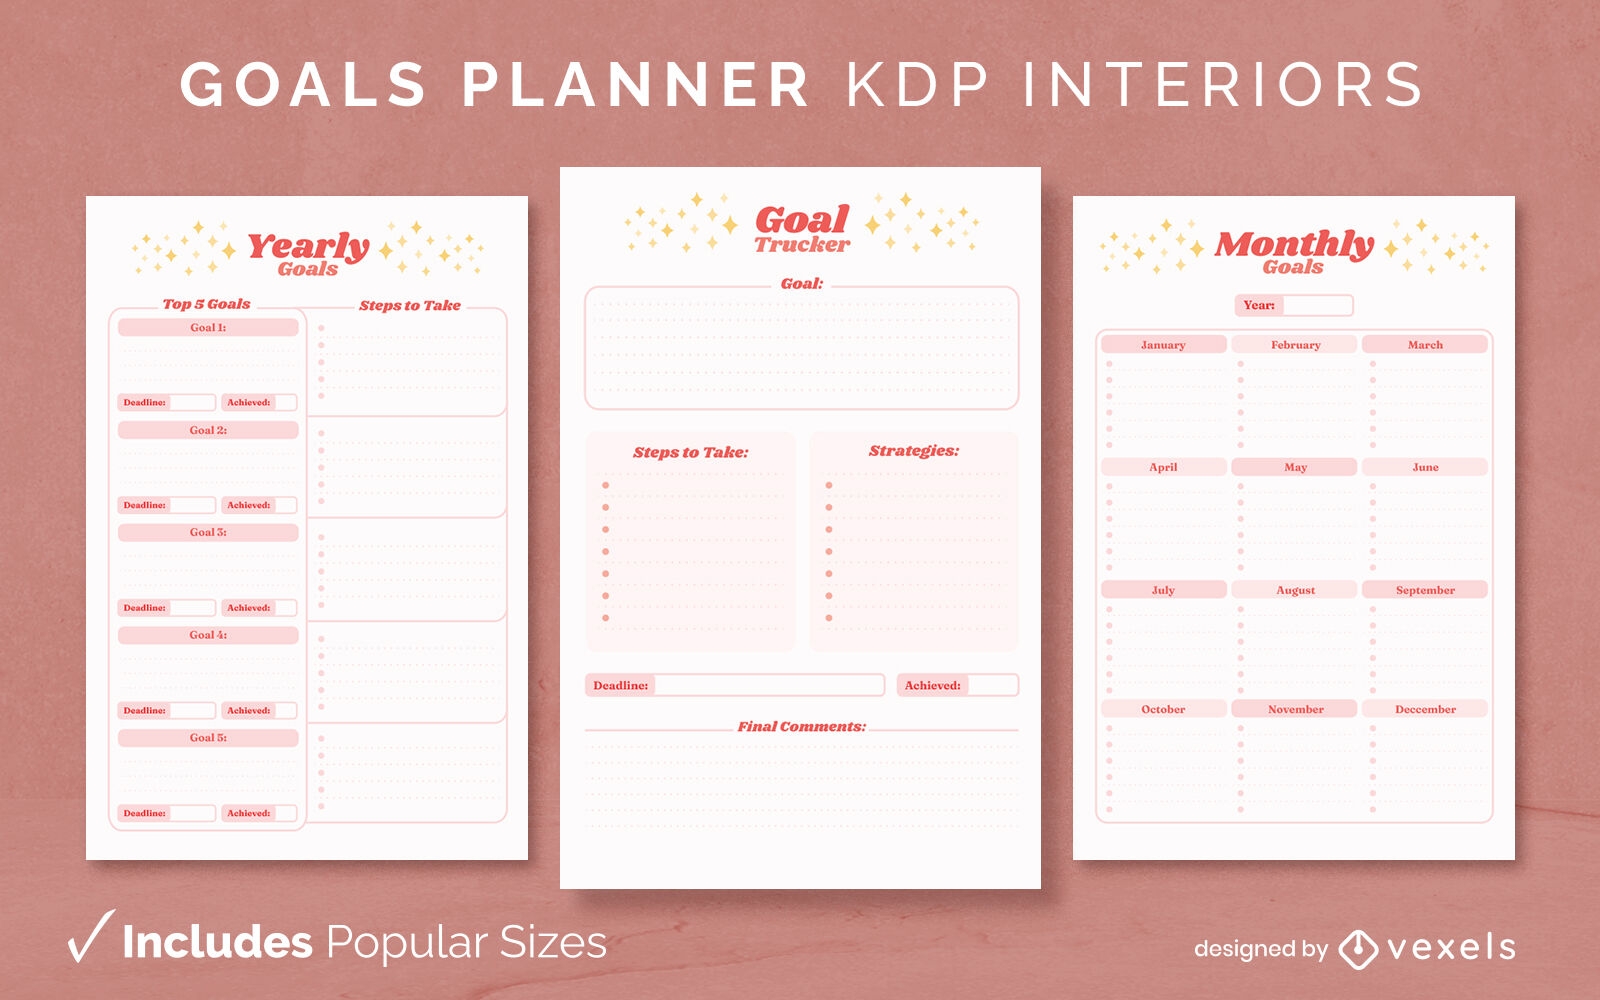 Plantilla de diseño de diario del planificador de objetivos KDP